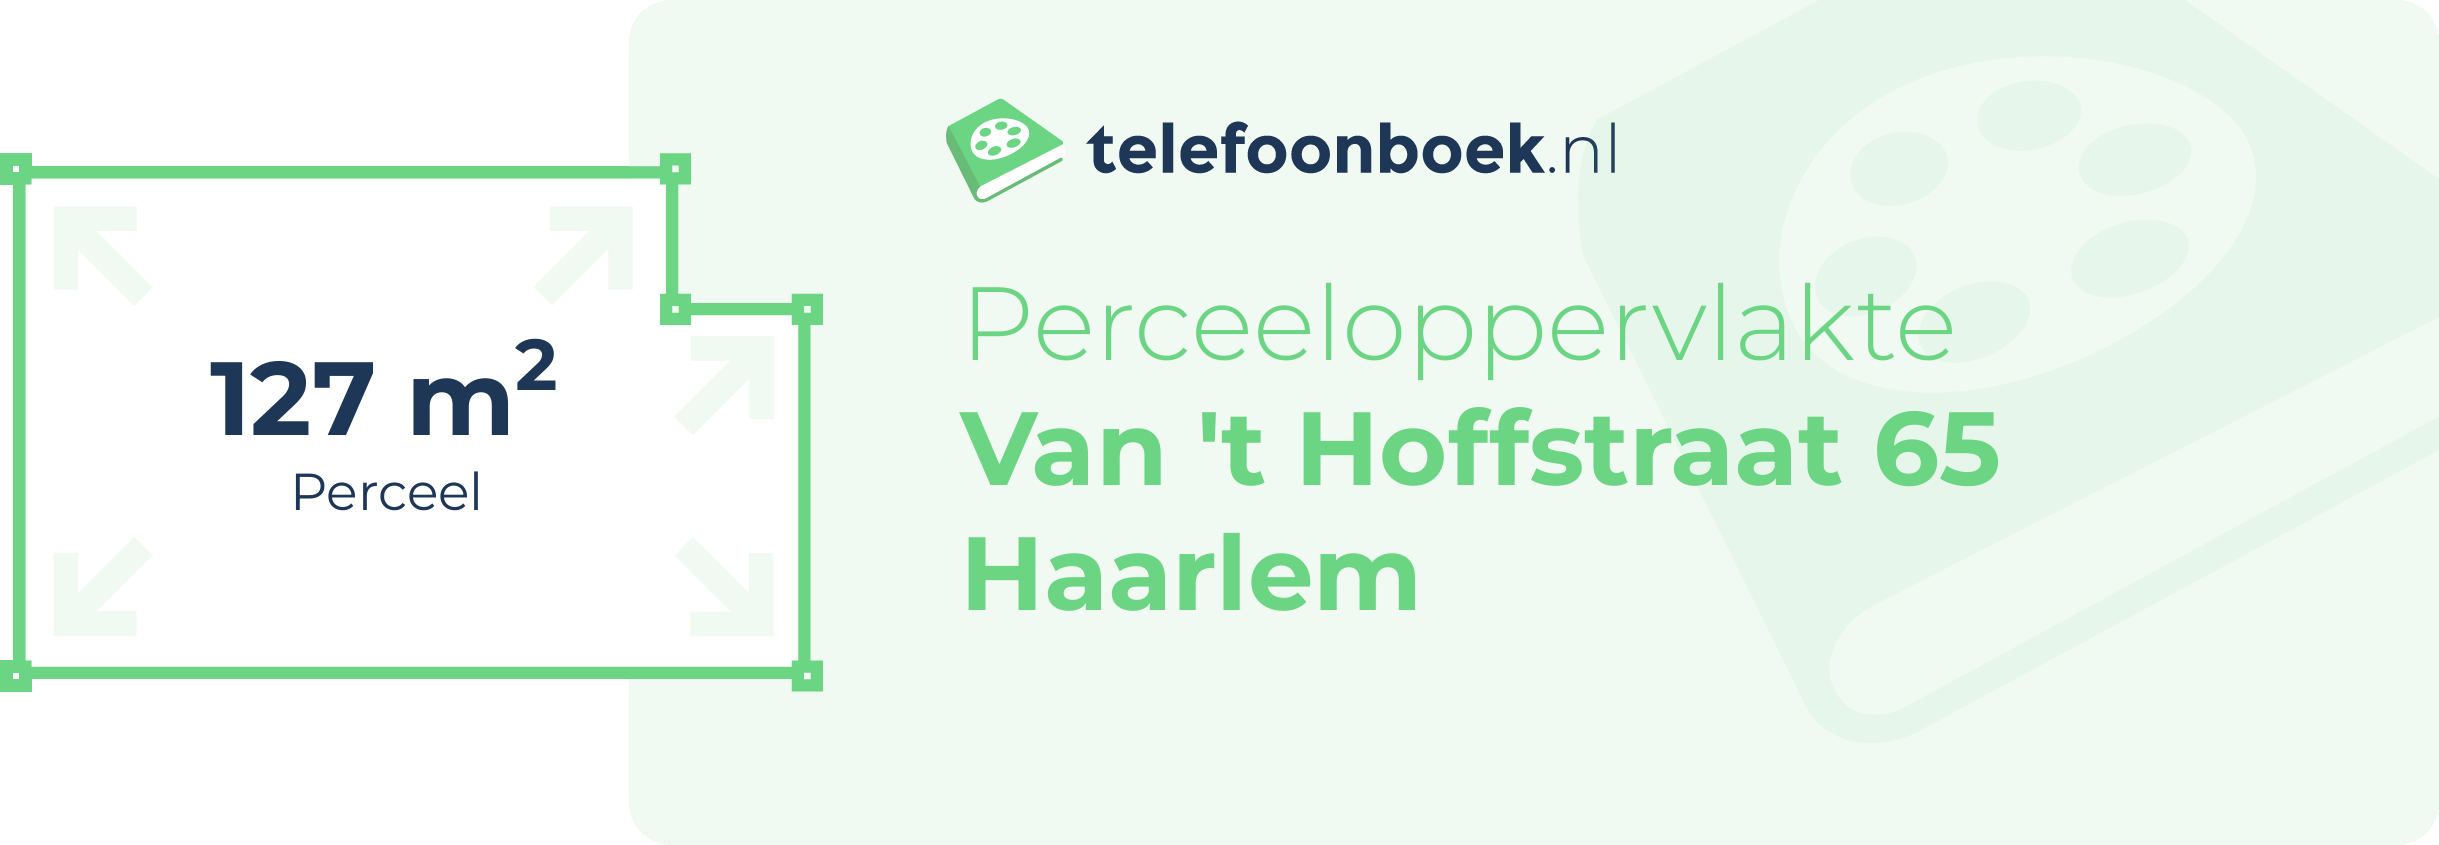 Perceeloppervlakte Van 't Hoffstraat 65 Haarlem